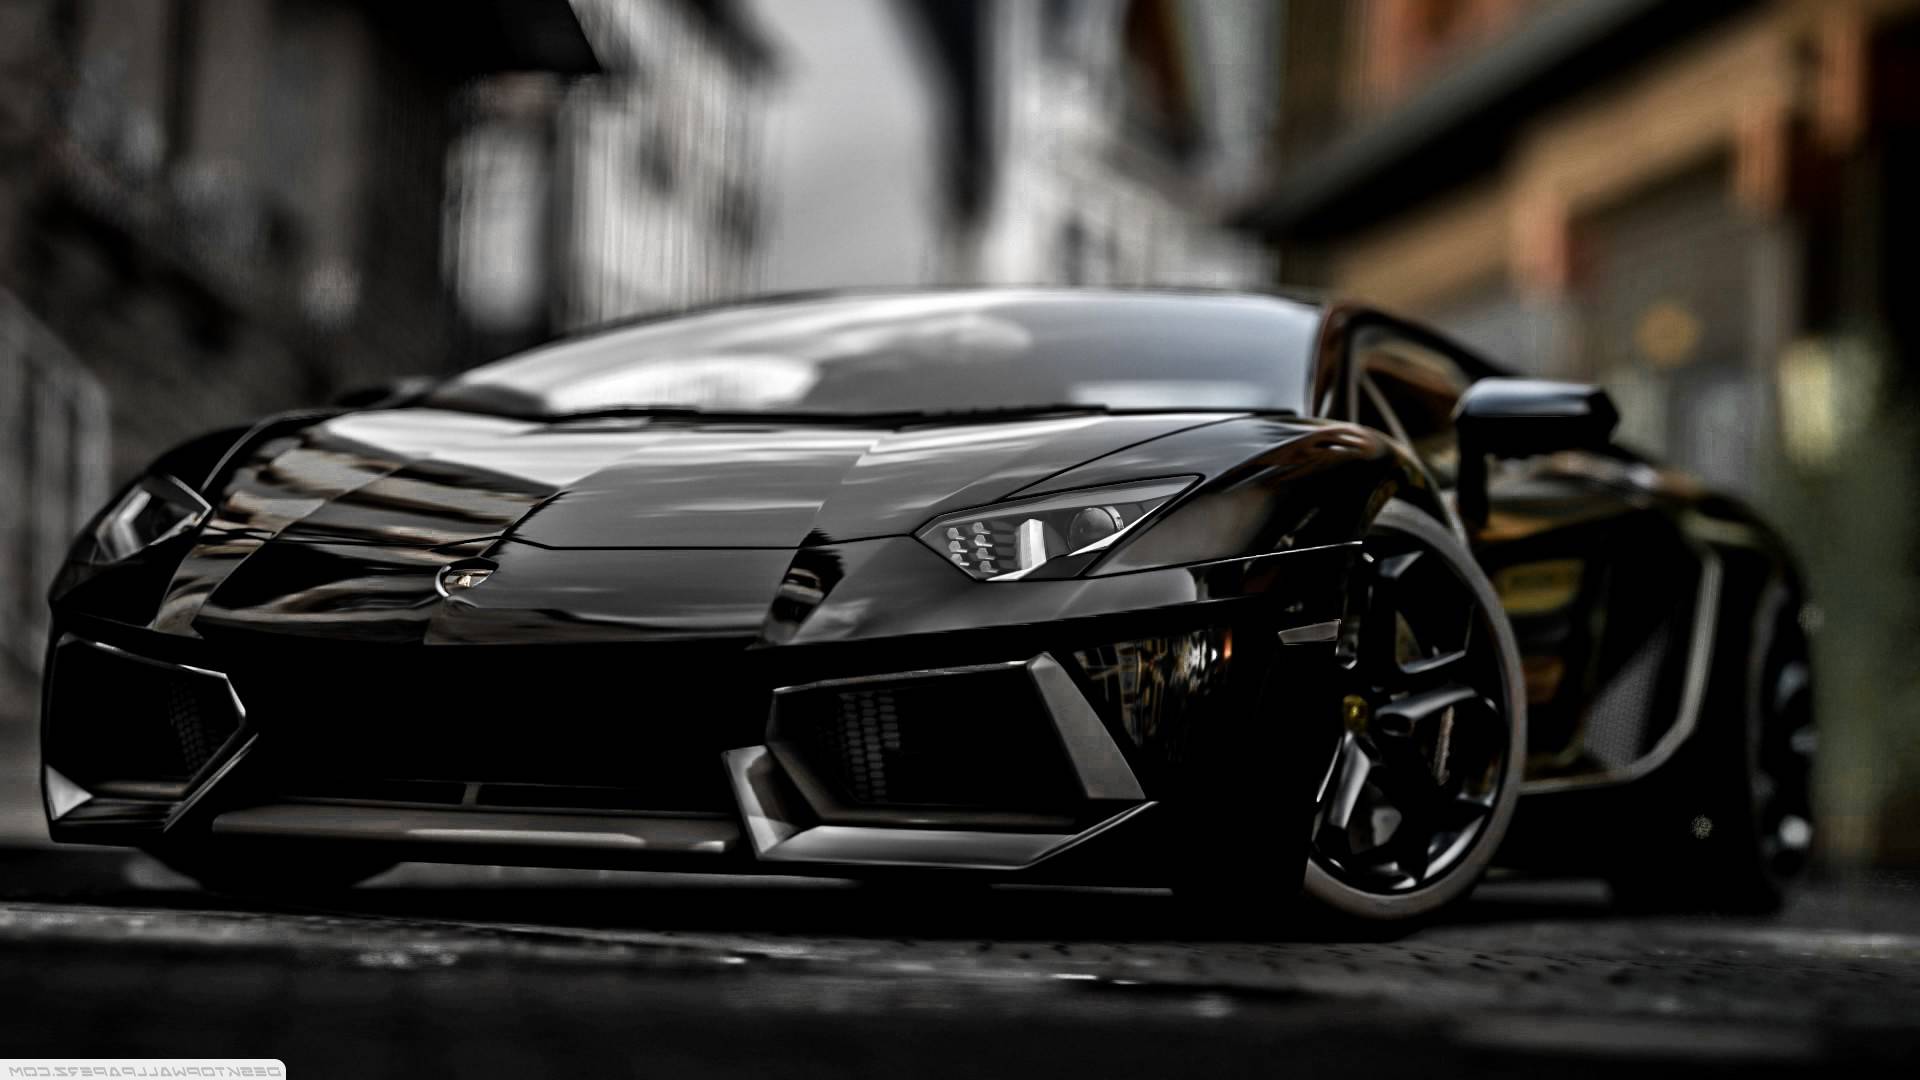 Lamborghini Veneno Wallpapers - Top Free Lamborghini Veneno Backgrounds